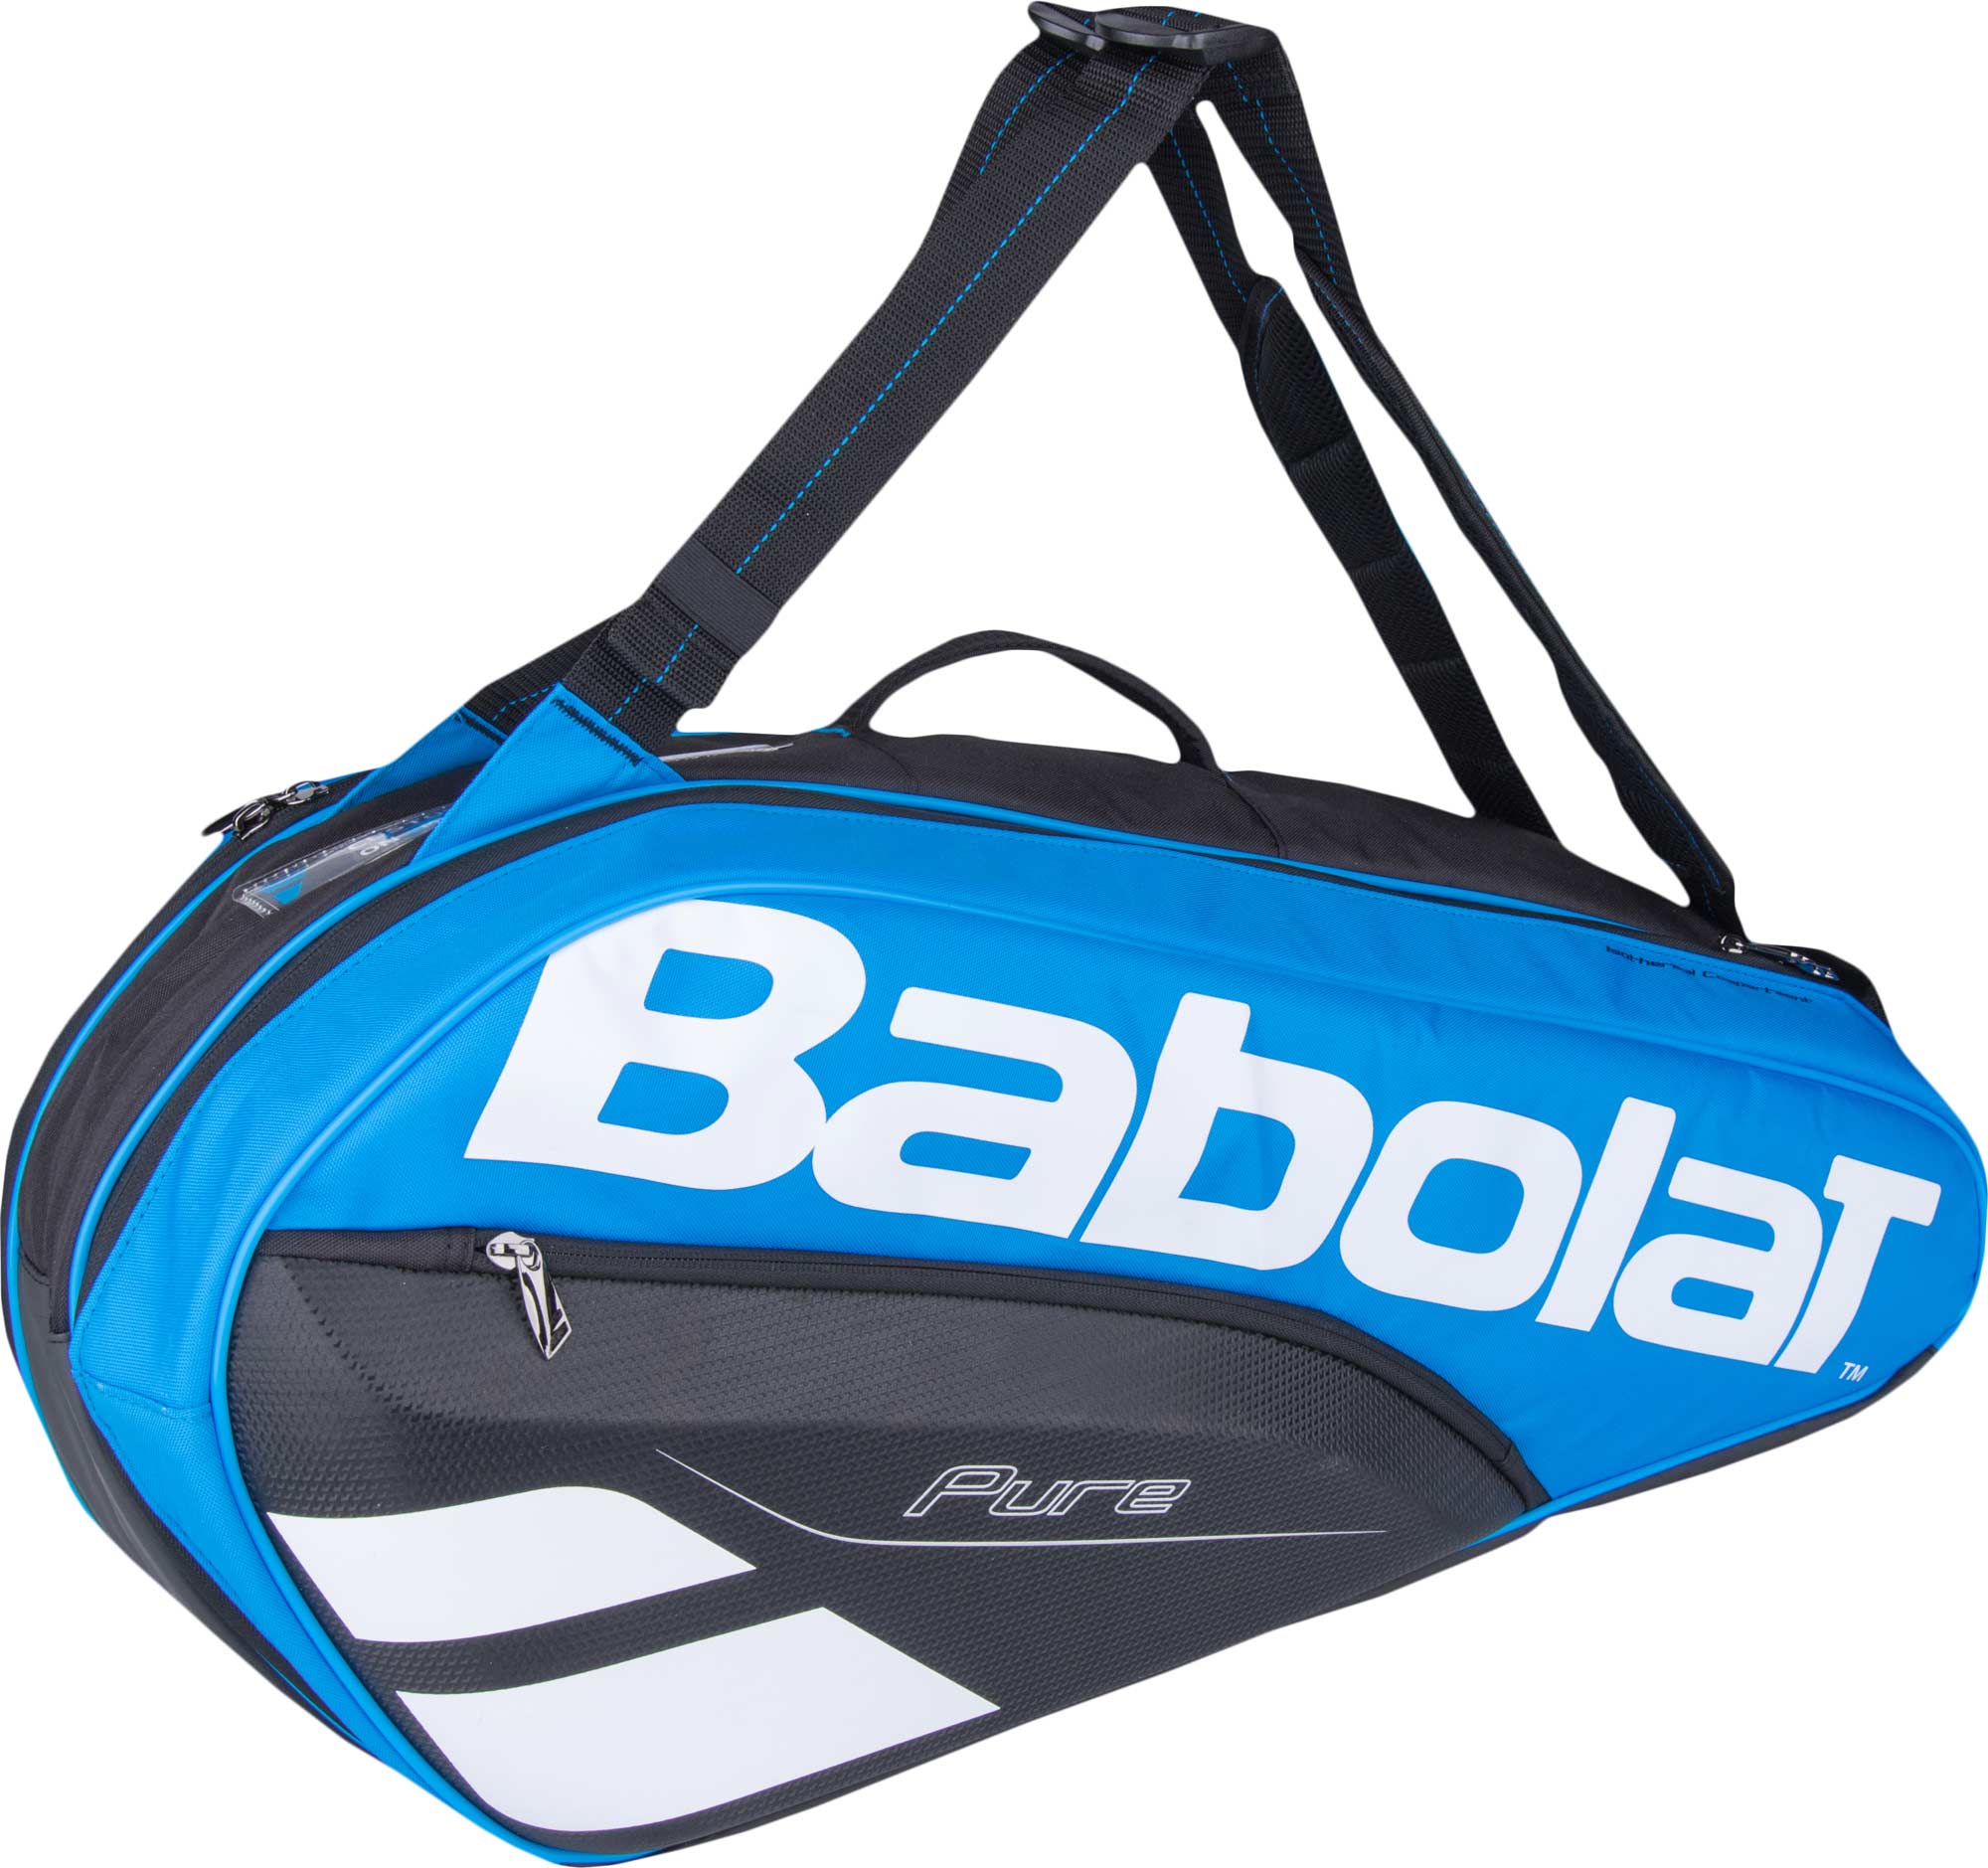 Tennis bag